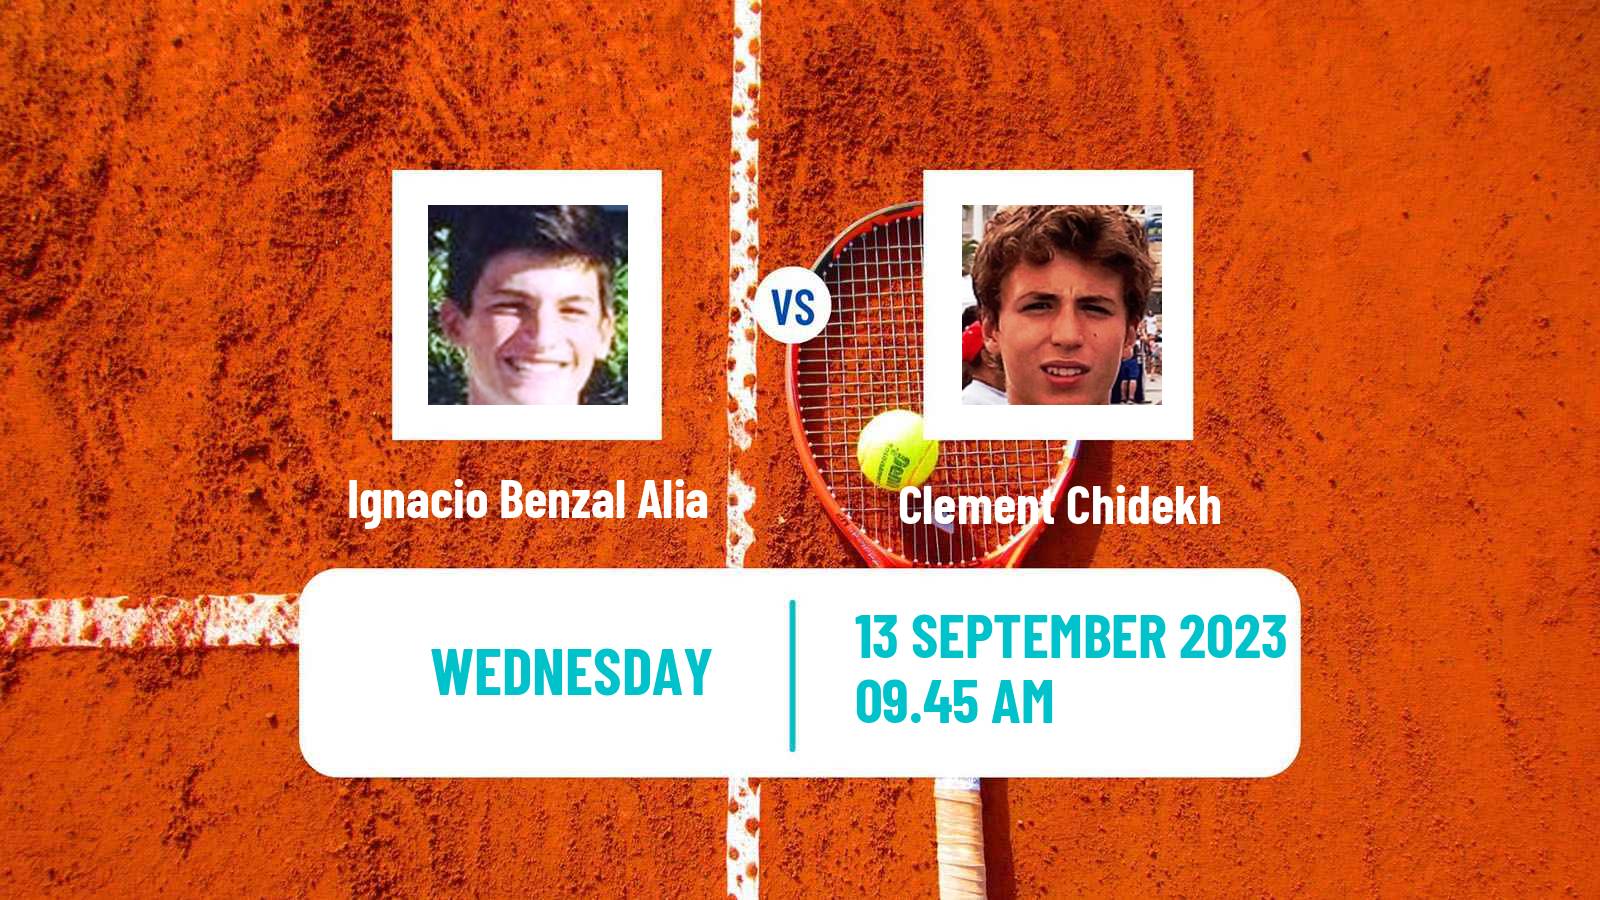 Tennis ITF M25 Madrid Men Ignacio Benzal Alia - Clement Chidekh